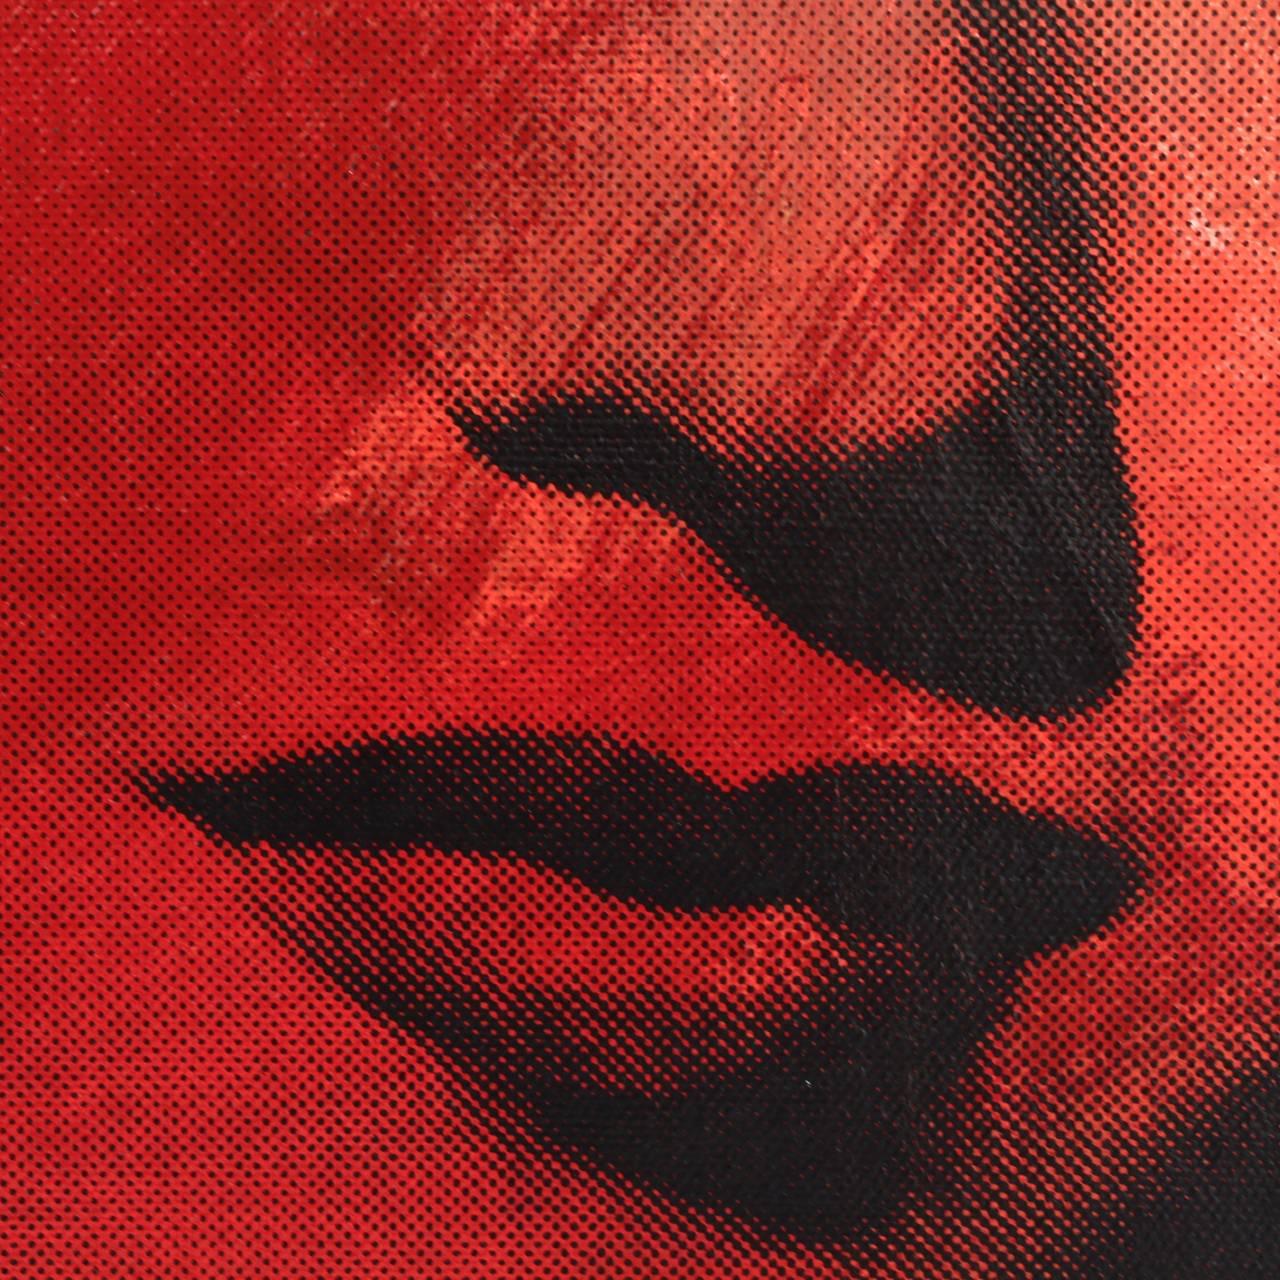 Modern Mini Marilyn 11 Red, A Pop-Art Screenprint of Marilyn Monroe by Steve Kaufman